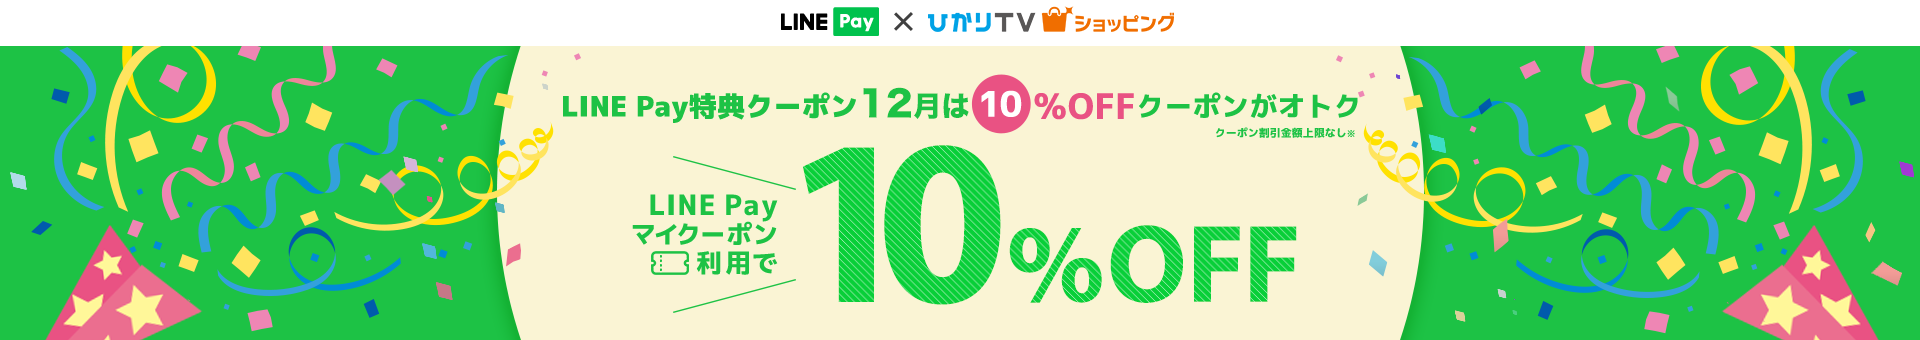 12月15,16日はLINE Payのお支払いがオトク！LINE Payマイクーポン利用で10%OFF!